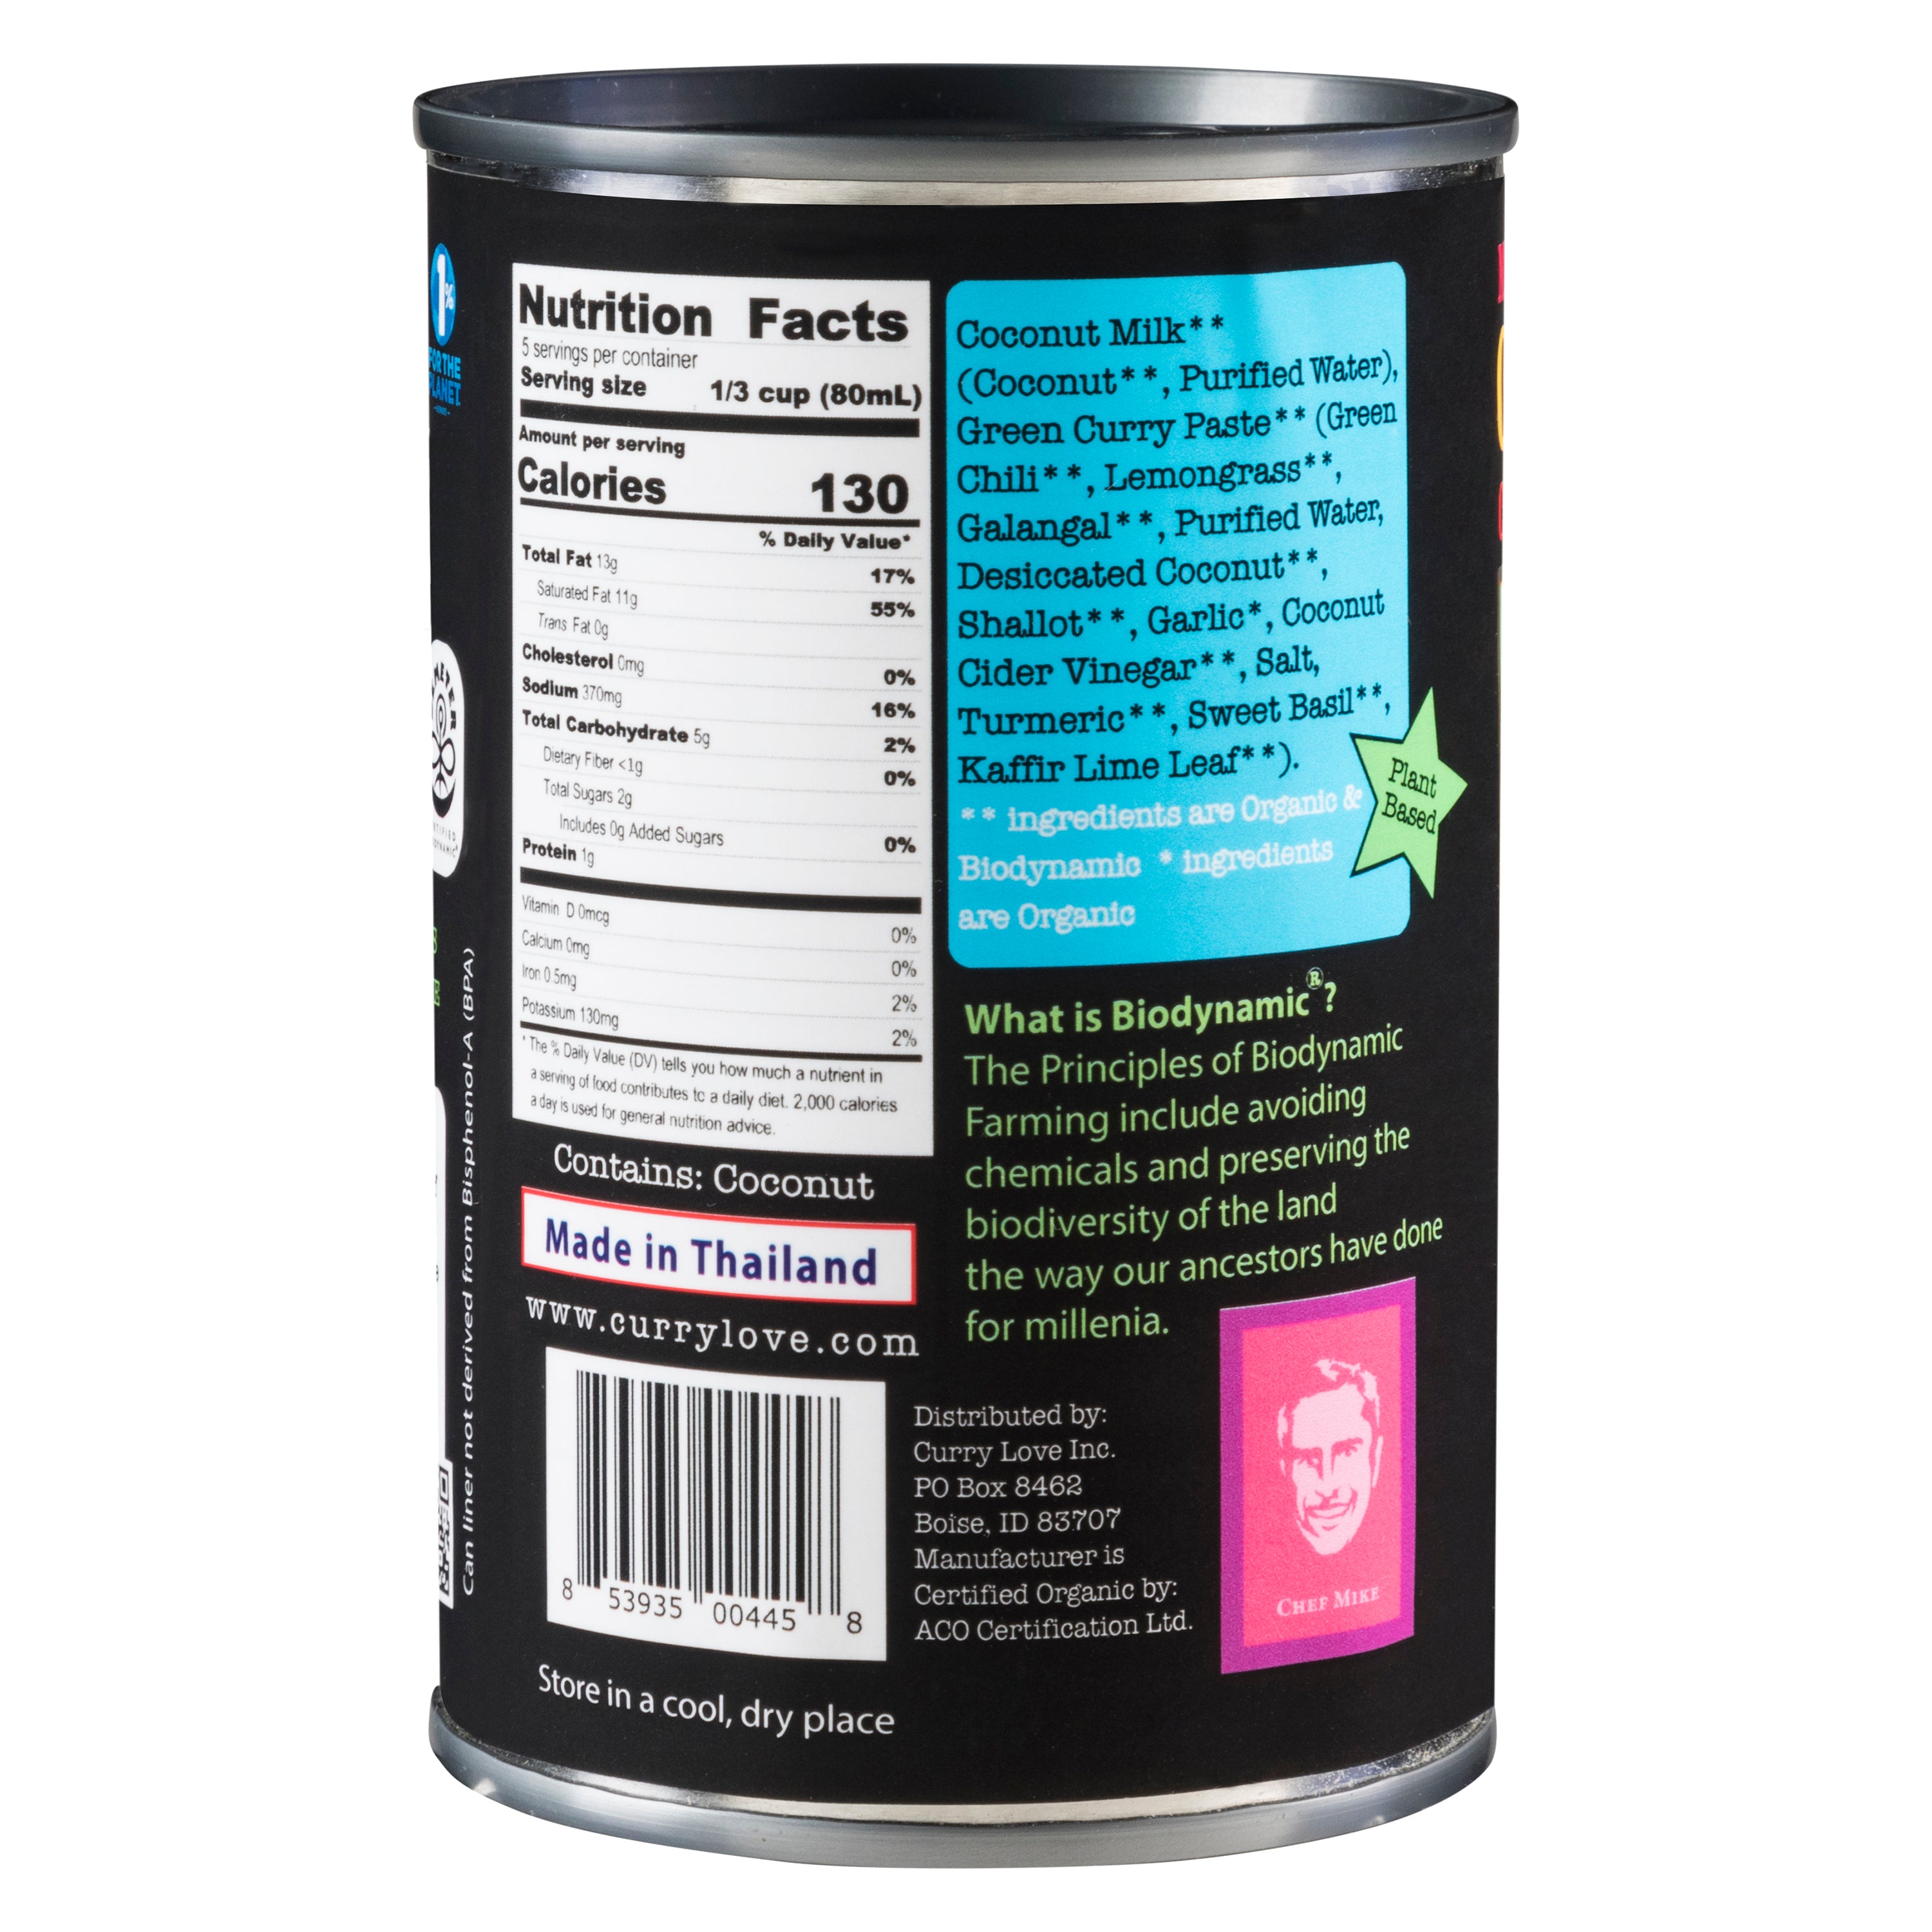 Biodynamic Red & Green Thai Curry Sauces 6 x 13.5 fl oz Tin Cans